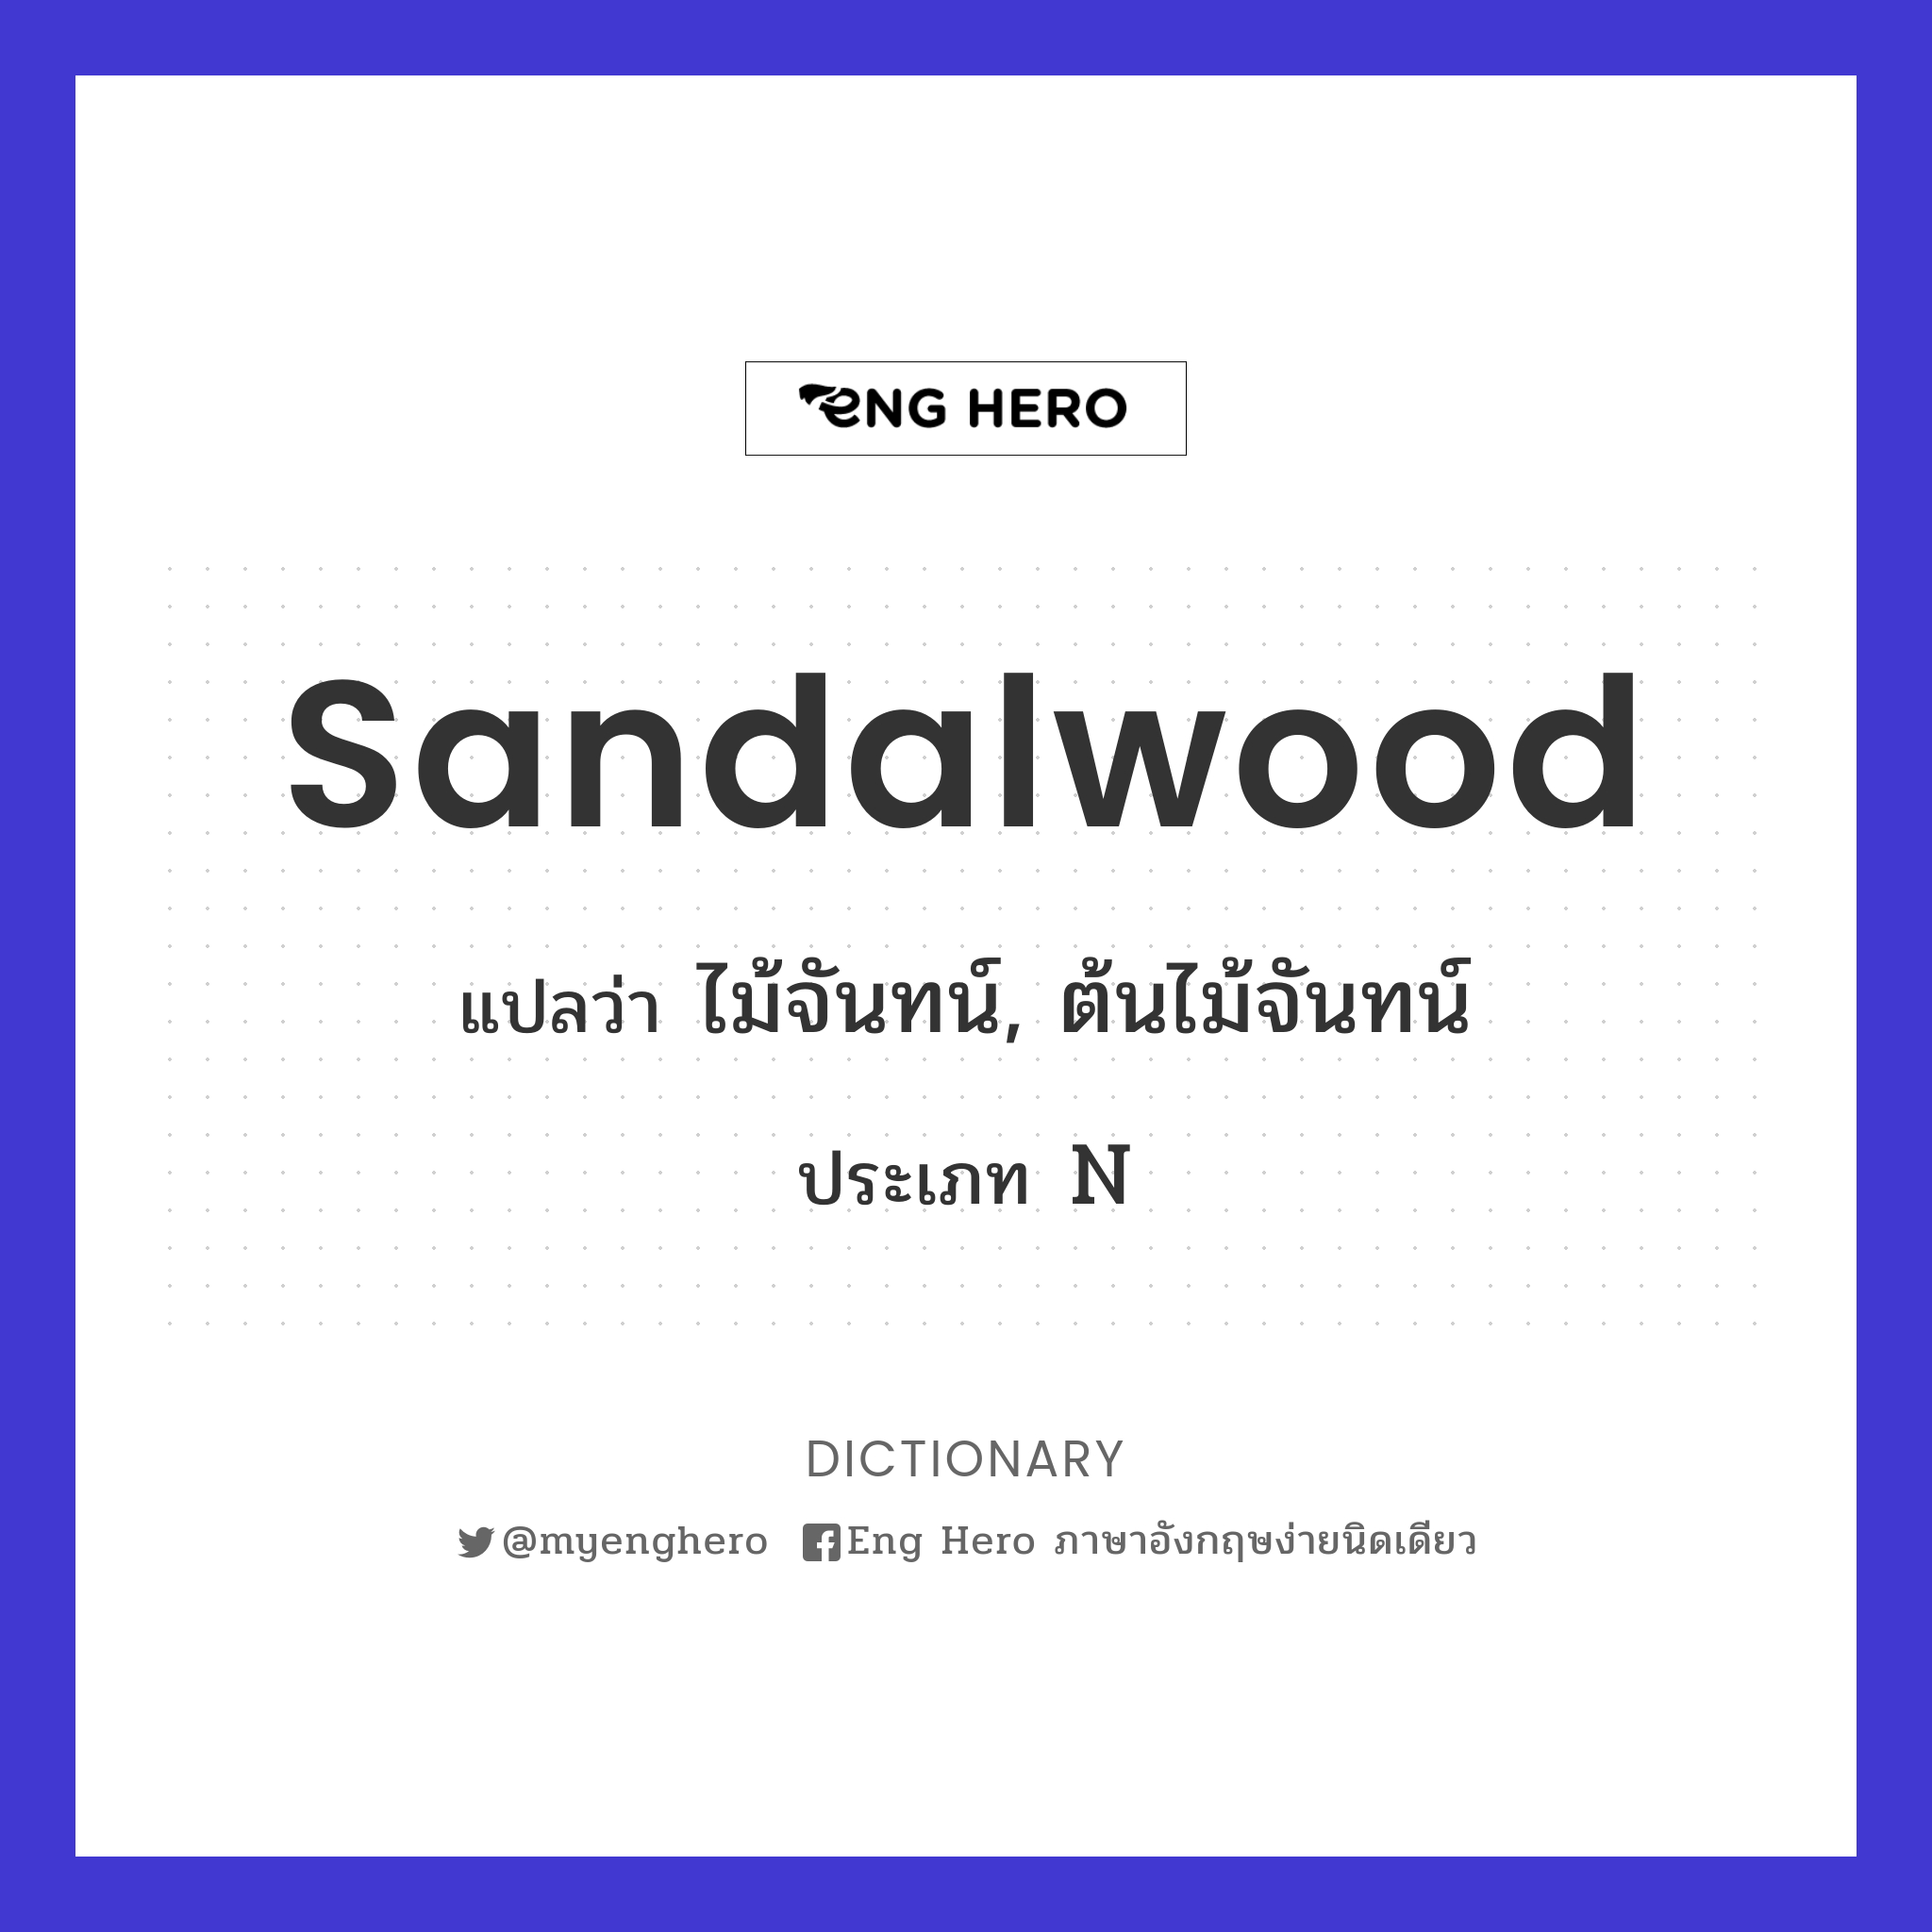 sandalwood